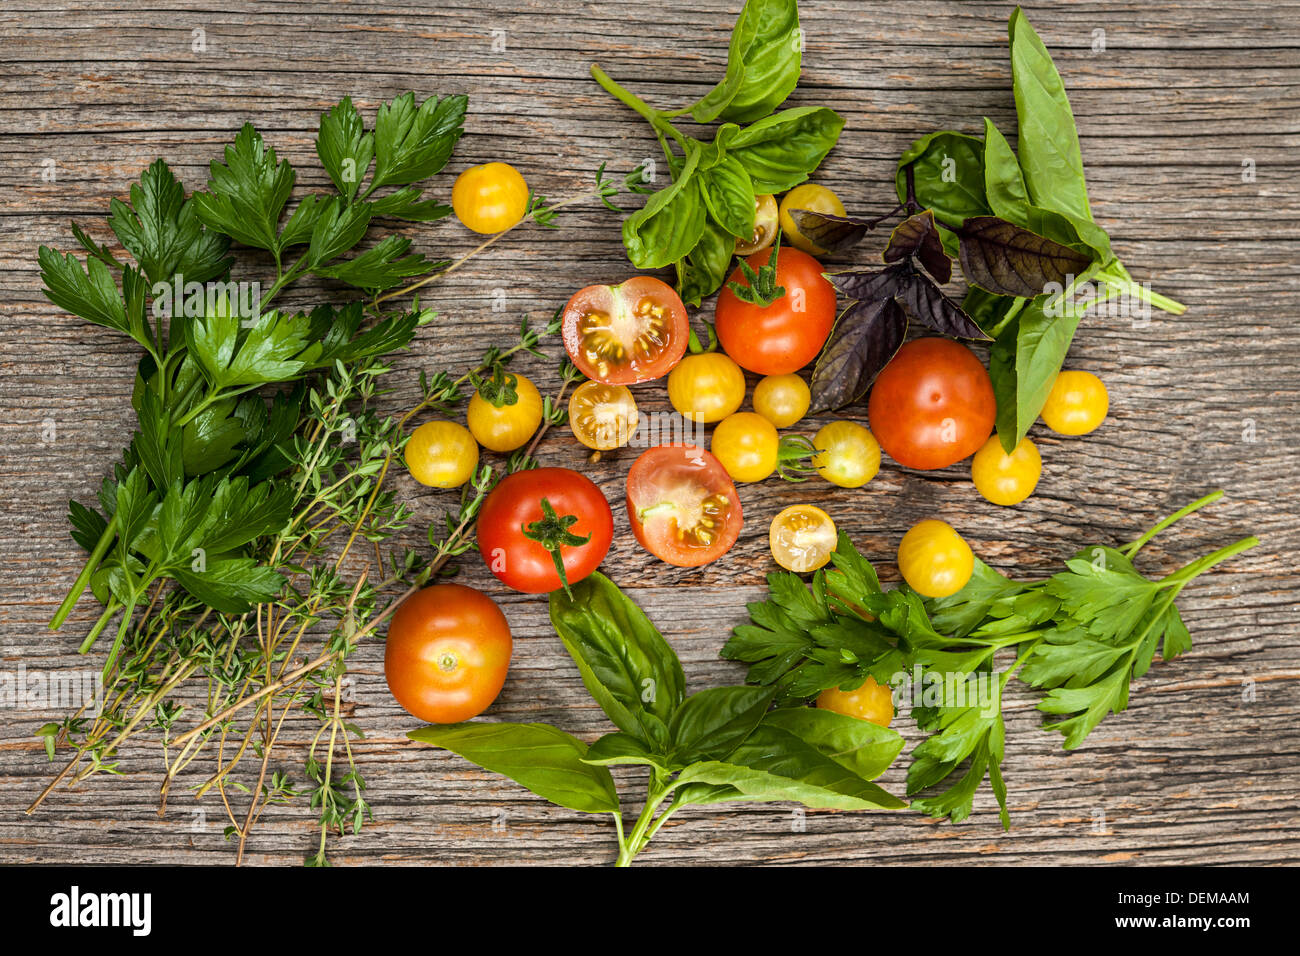 Frischen bunten Tomaten und Kräutern auf rustikalen hölzernen Hintergrund von oben Stockfoto